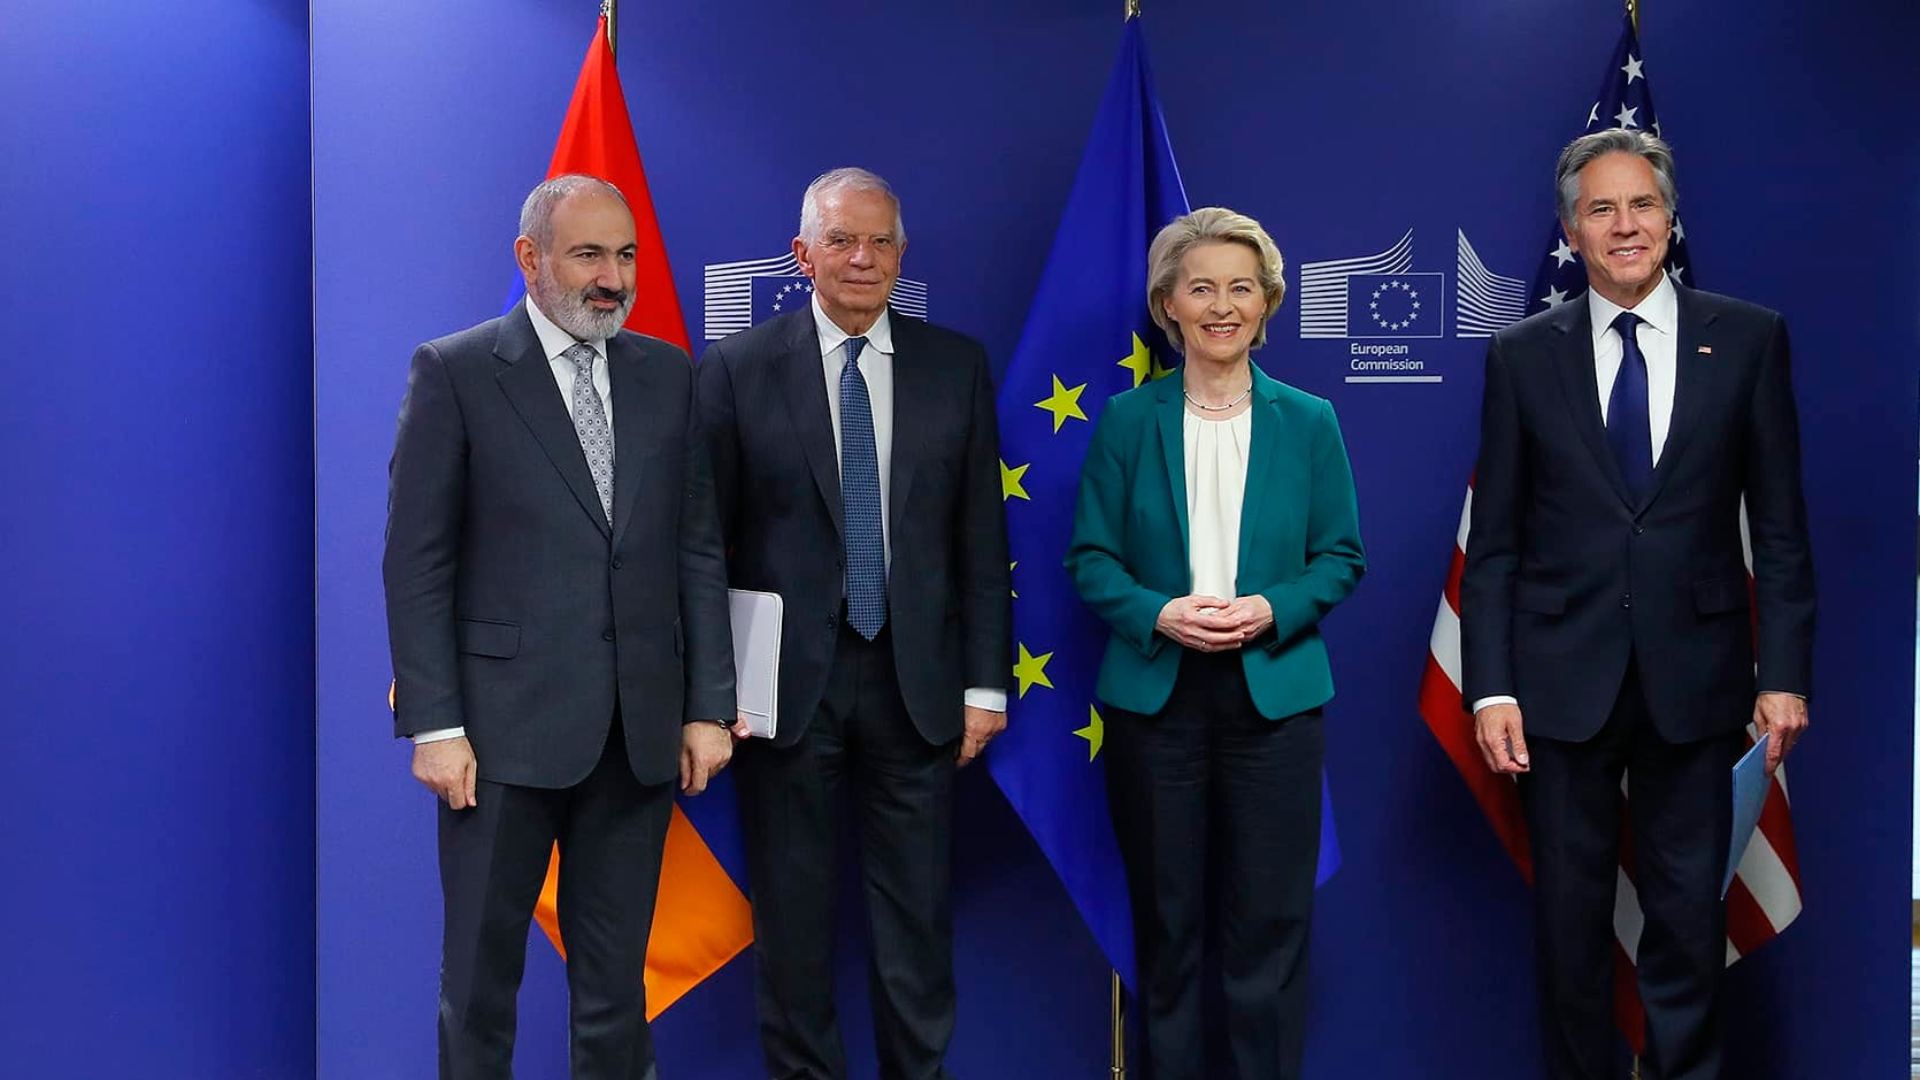 ԵՄ-ն առաջիկա չորս տարիներին 270 մլն եվրոյի աջակցություն կտրամադրի Հայաստանին․ Ուրսուլա ֆոն դեր Լայեն